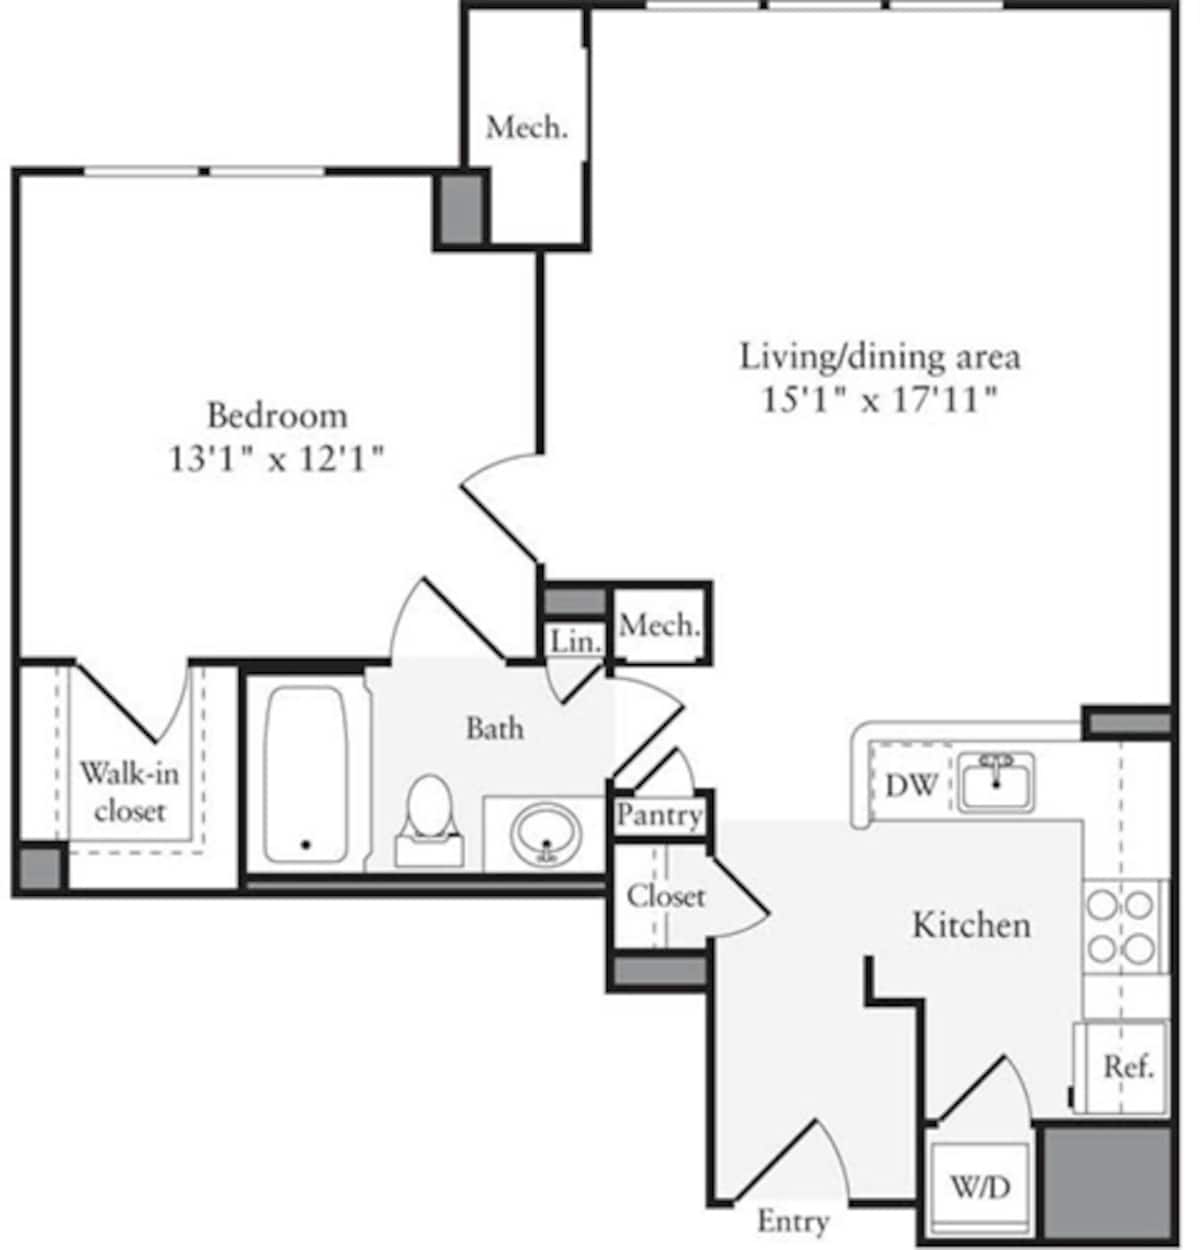 Floorplan diagram for 1 Bedroom E, showing 1 bedroom